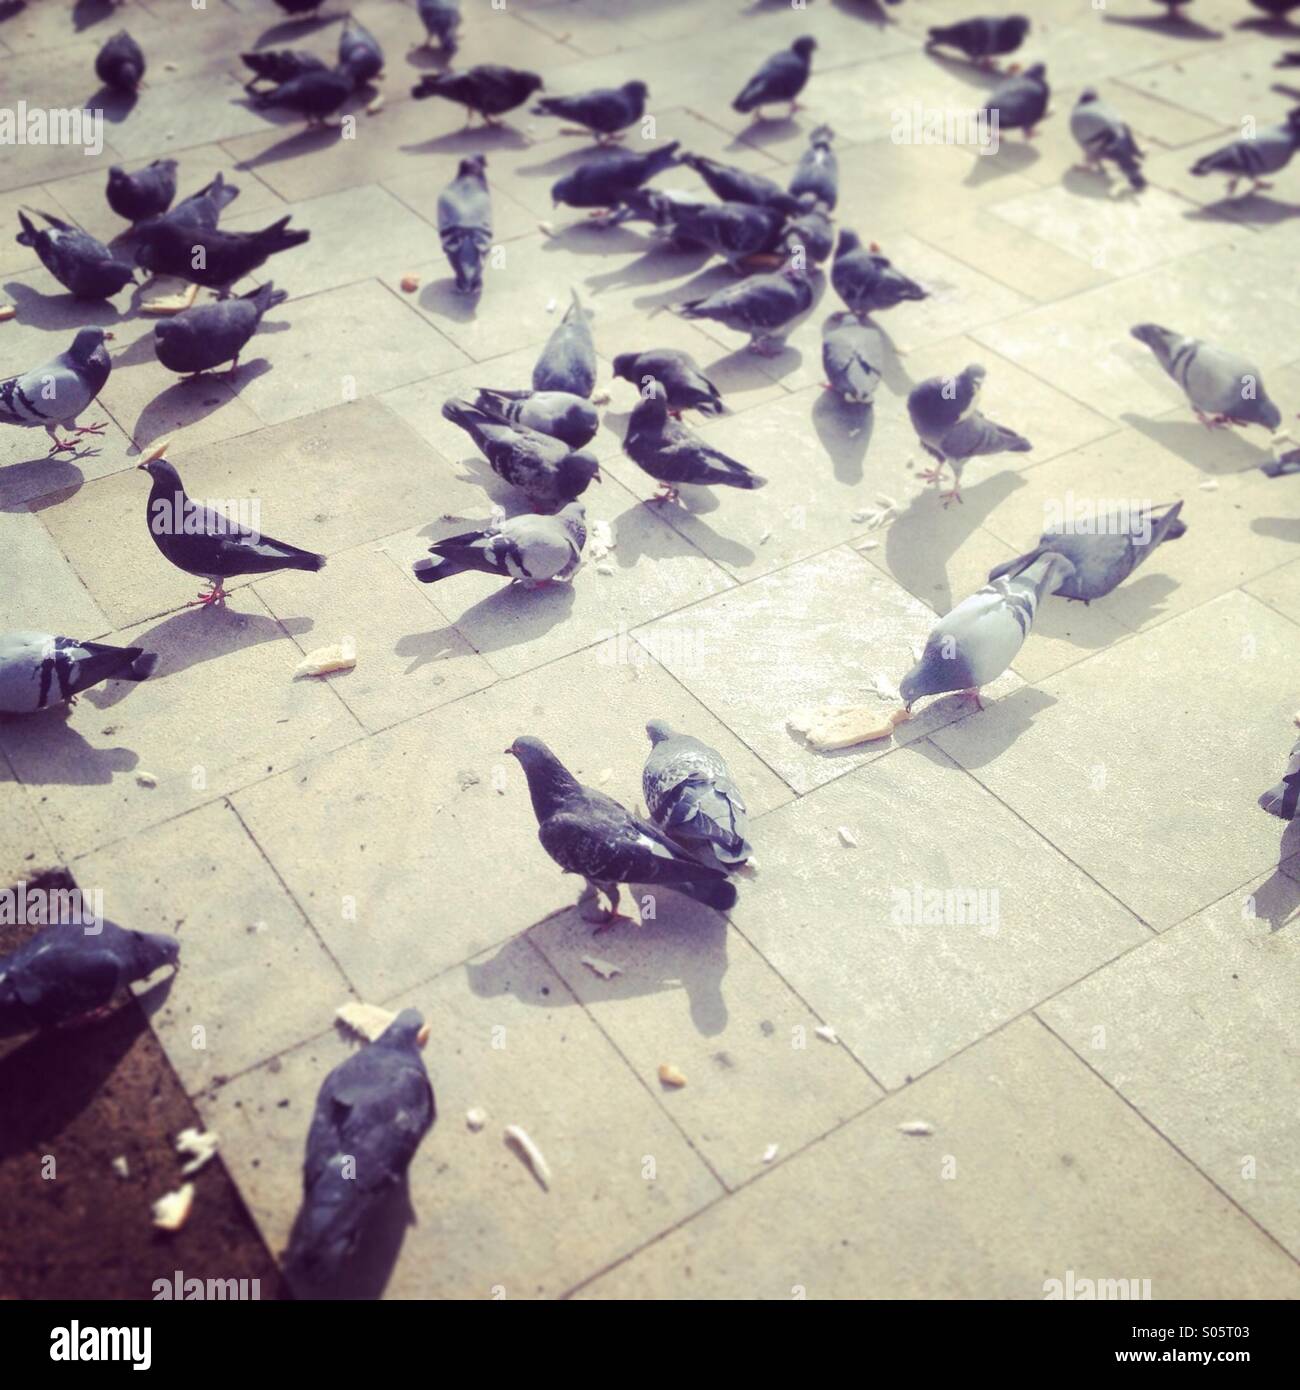 Tauben essen Brot auf dem Boden Stockfoto